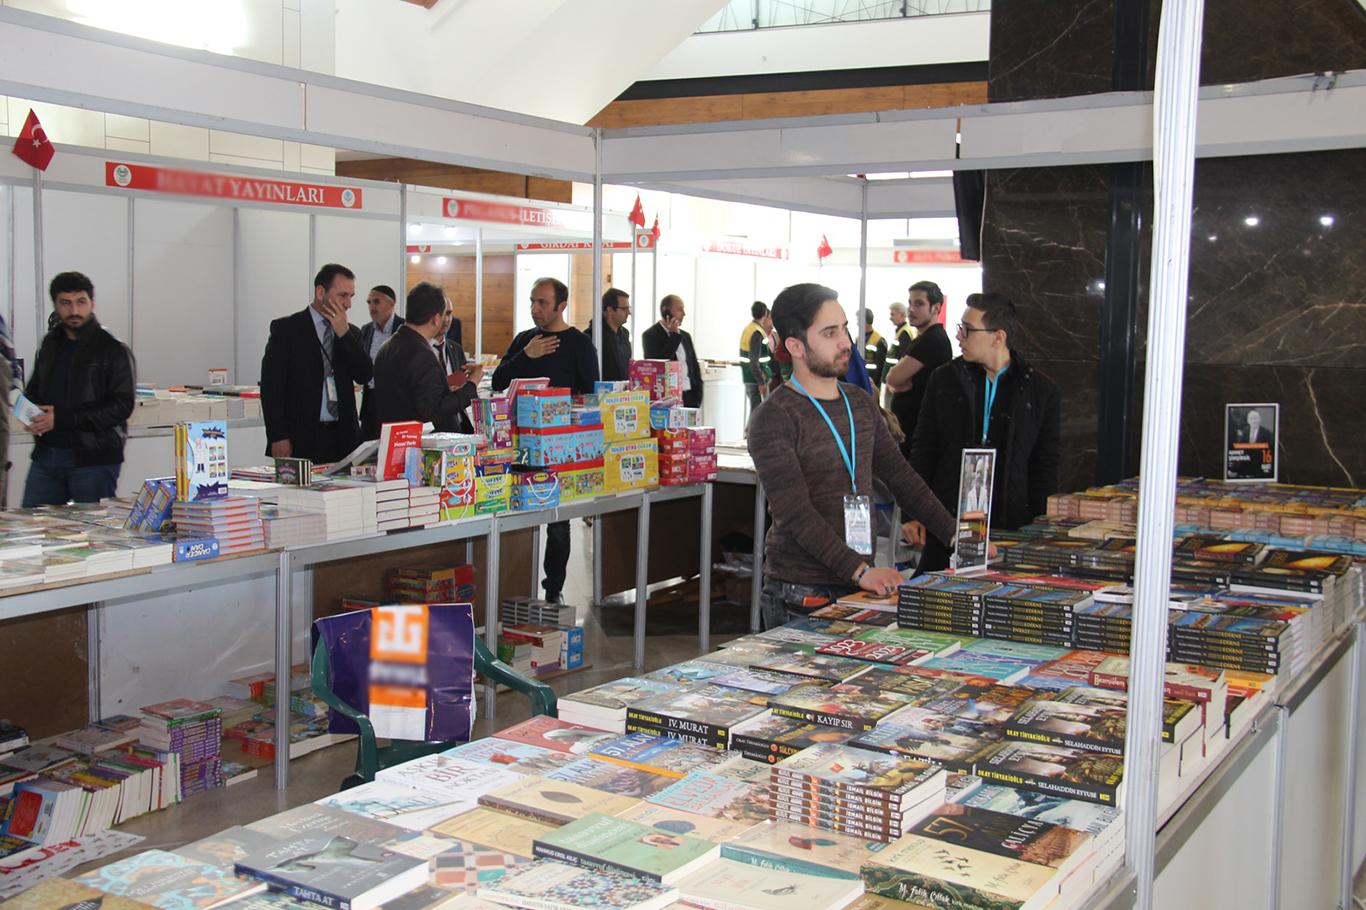 130 yayınevinin katılımıyla bir milyon kitabın sergilendiği fuar açıldı